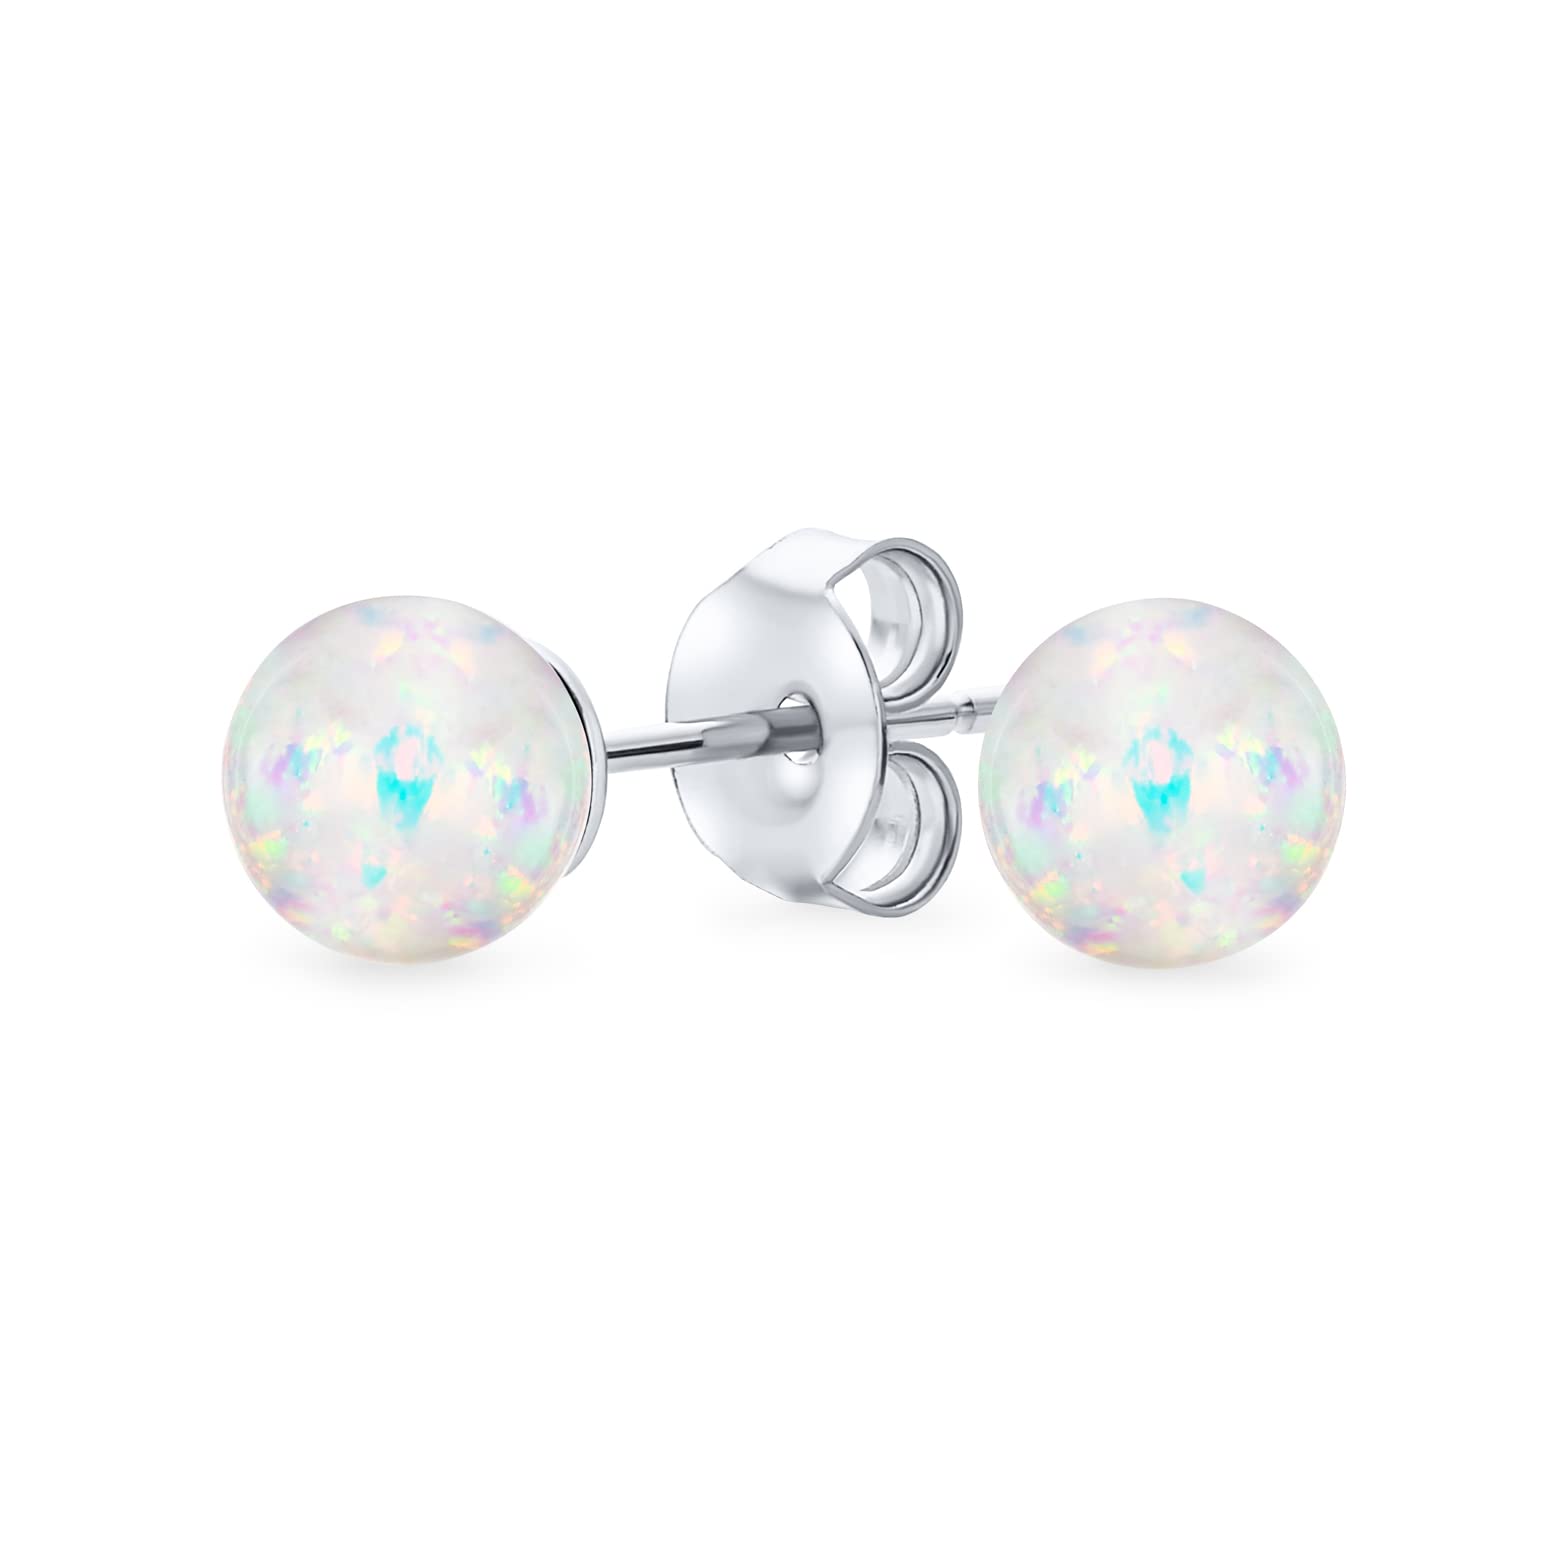 Minimalistische Einfache Runde Perle Edelstein Erstellt Opalisierende Weiße Regenbogen Opal Kugel Ohrstecker Für Frauen Oktober Birthstone 6Mm